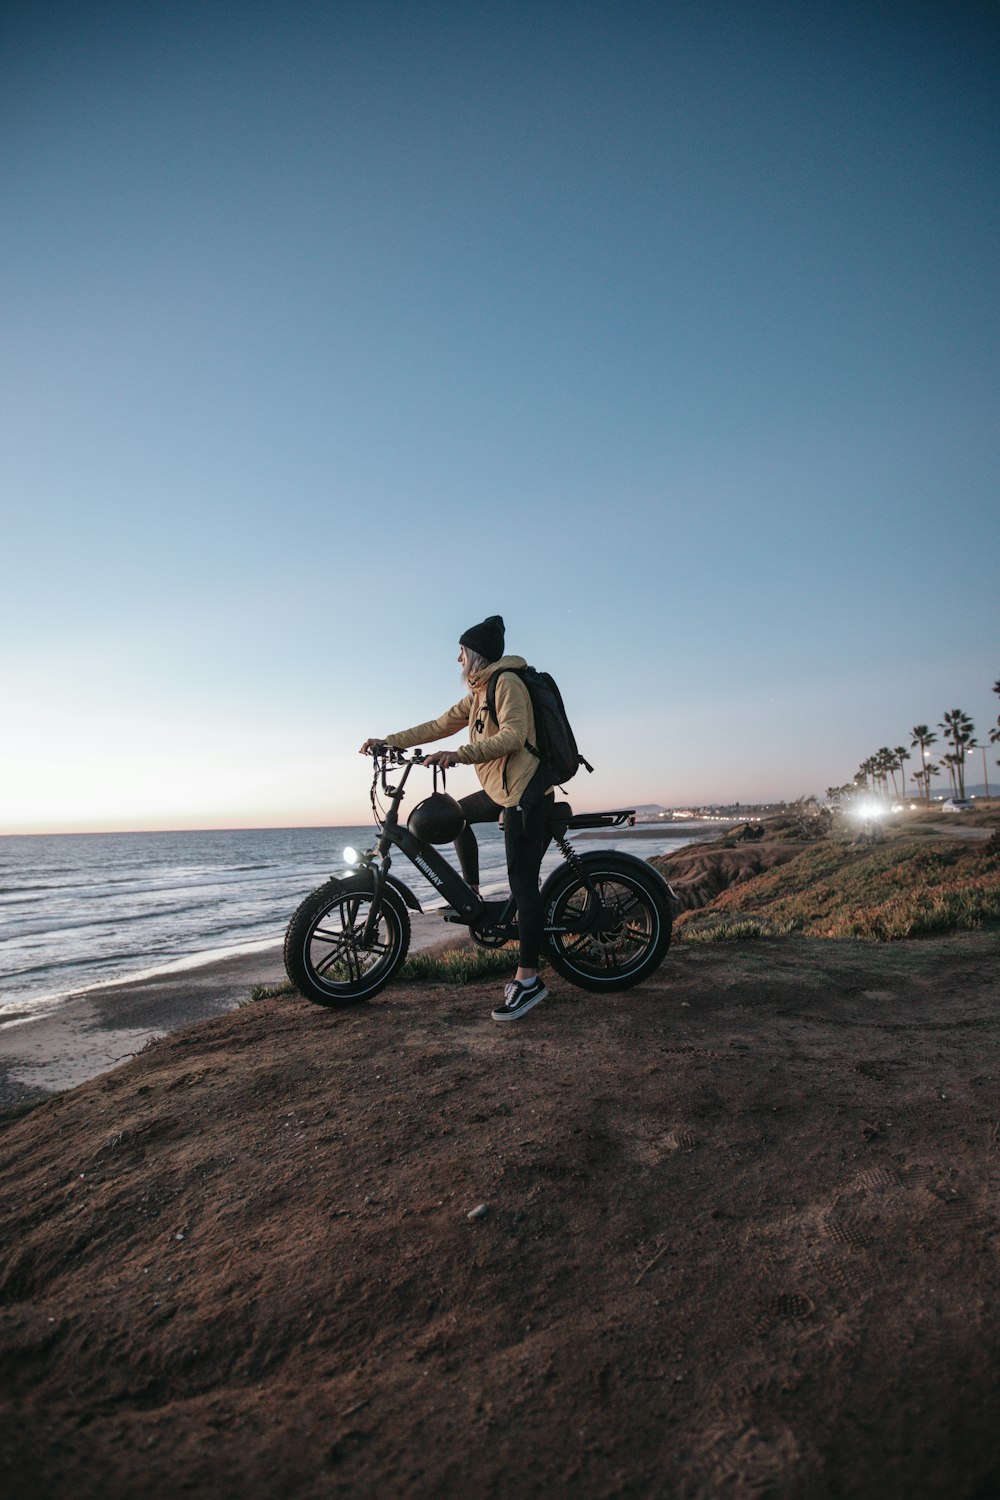 uomo in giacca marrone che cavalca su una motocicletta nera su sabbia marrone vicino allo specchio d'acqua durante